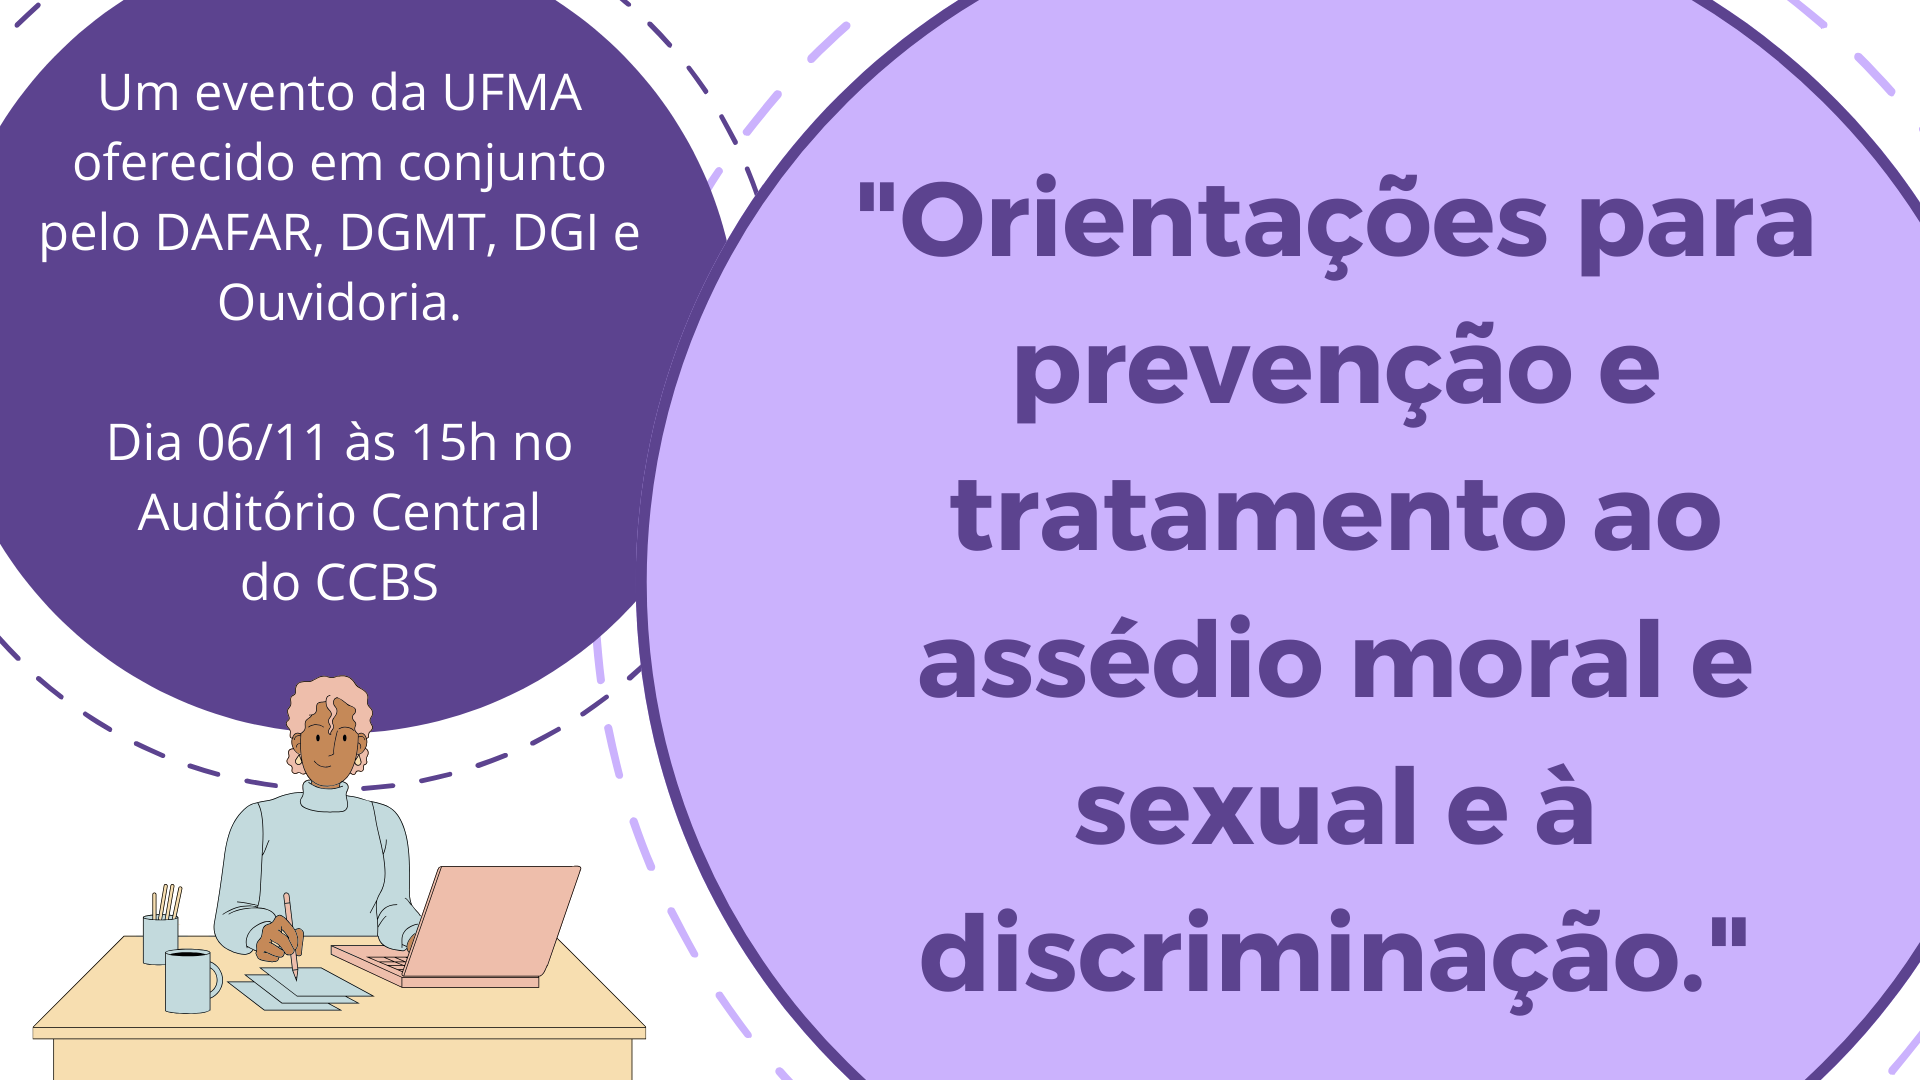 Evento do Curso de Farmácia debate prevenção e tratamento de assédios e discriminações, nesta segunda-feira, na UFMA